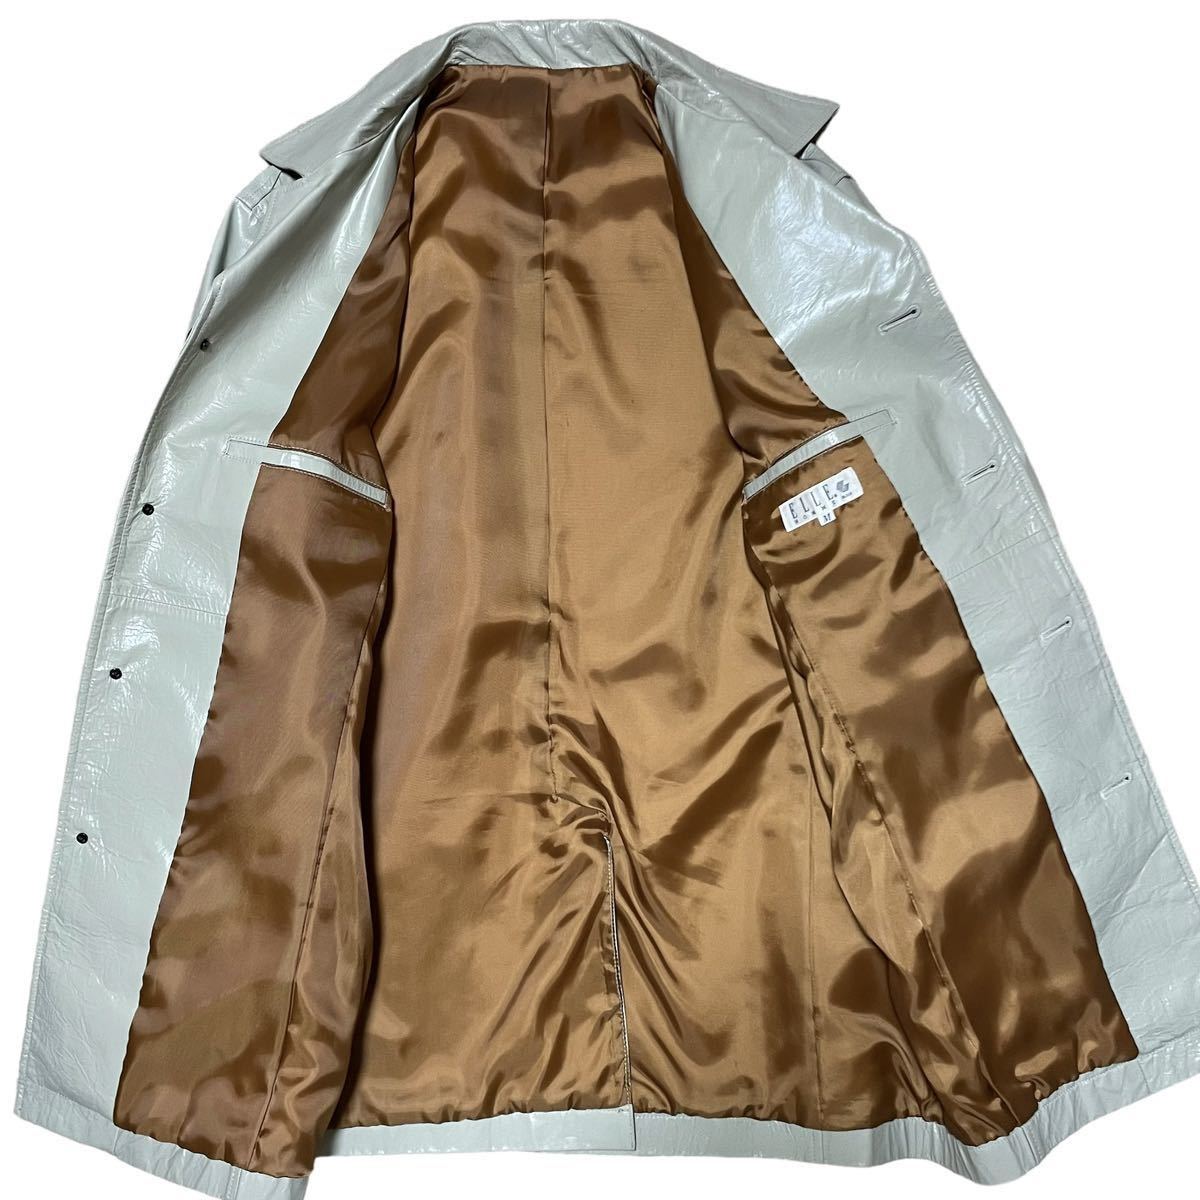 ELLE HOMMEレザージャケット シャツ コート M グレー くすみカラー ピッグスキン 豚革 合成樹脂コーティング アウター 上着 羽織り 艶感_画像3